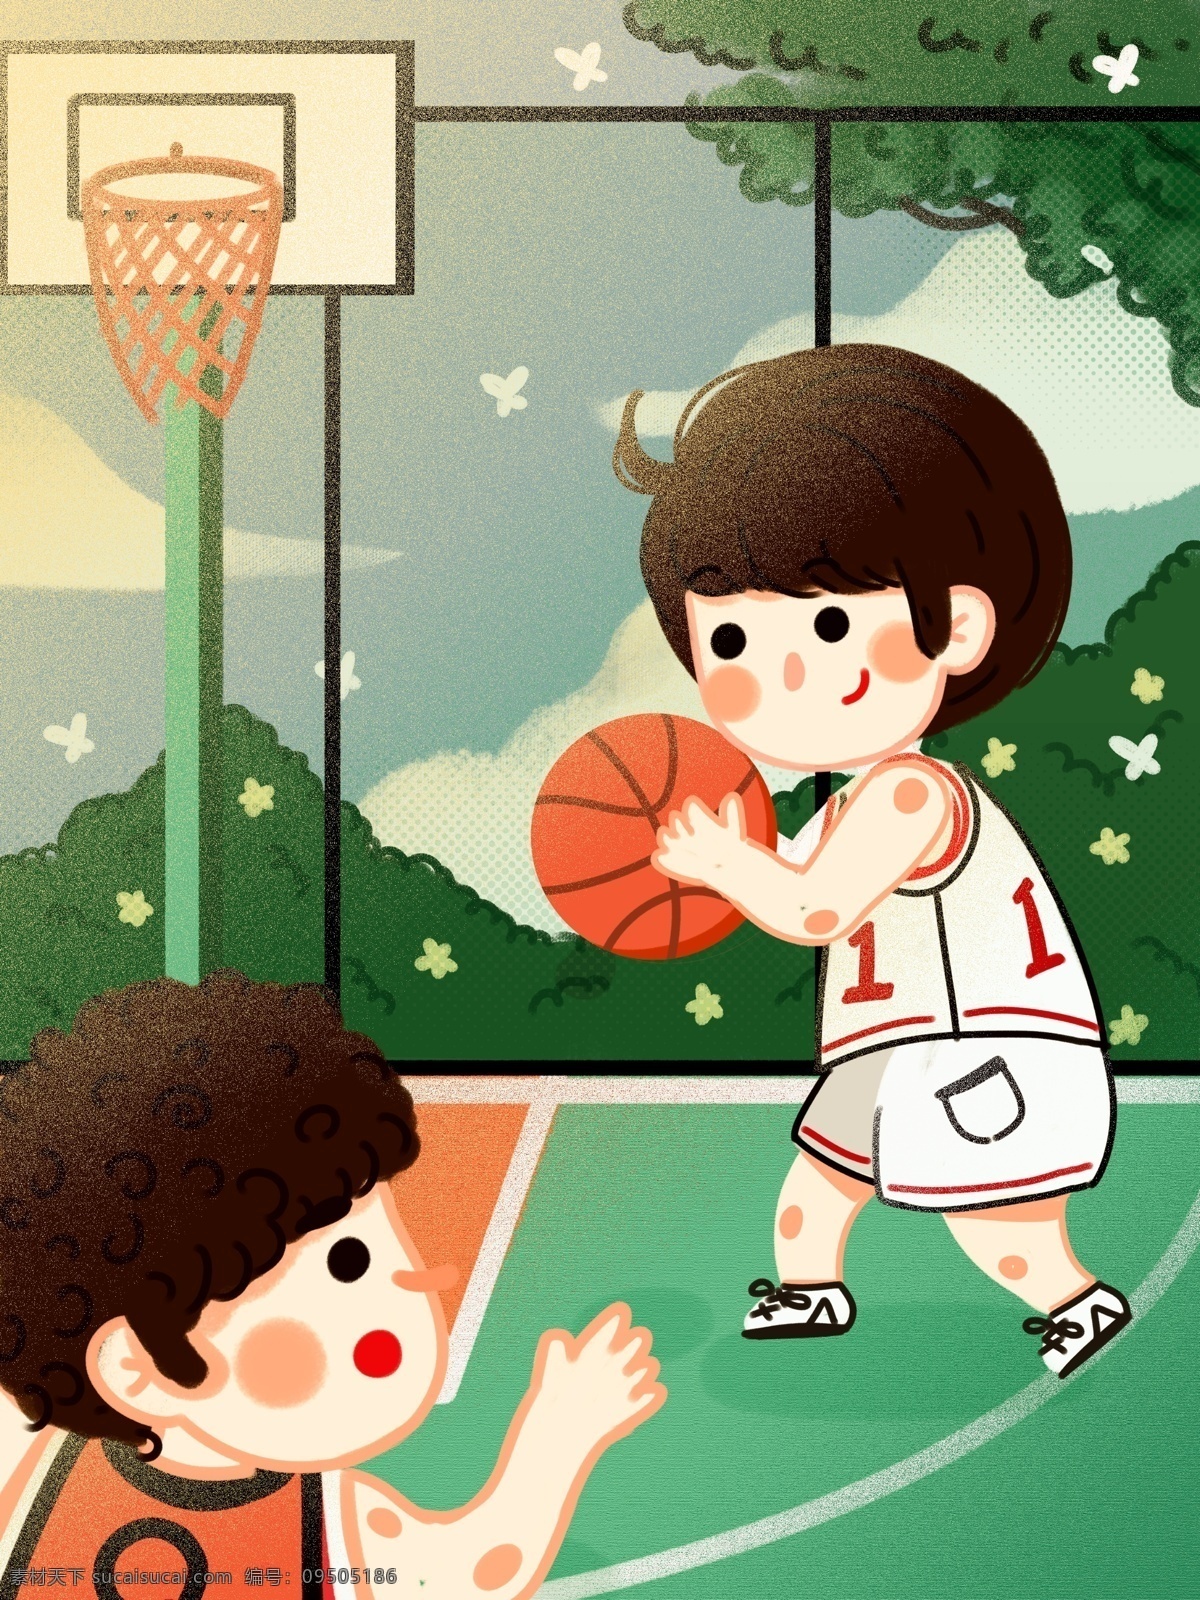 国际 篮球 日 篮球场 友人 朋友 可爱 卡通 扁平 树叶 打篮球 树 友谊赛 国际篮球日 操场 比赛 一对一